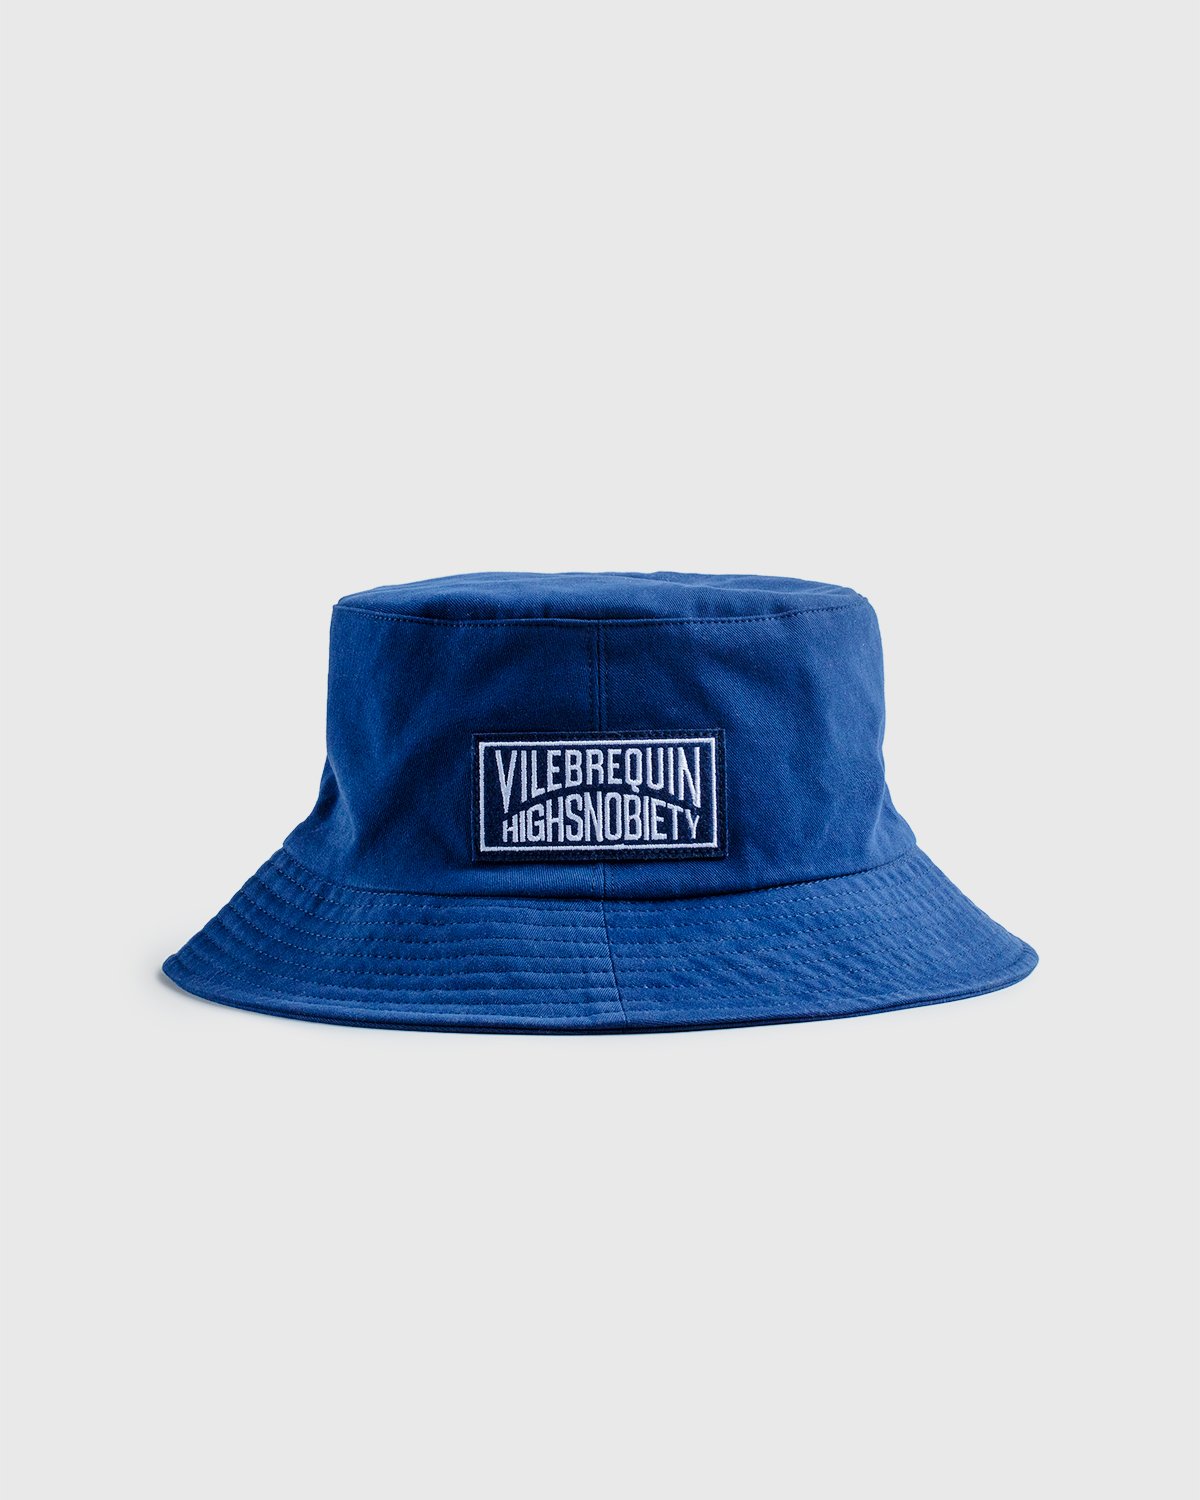 Vilebrequin x Highsnobiety - Logo Bucket Hat Navy - Accessories - Blue - Image 1